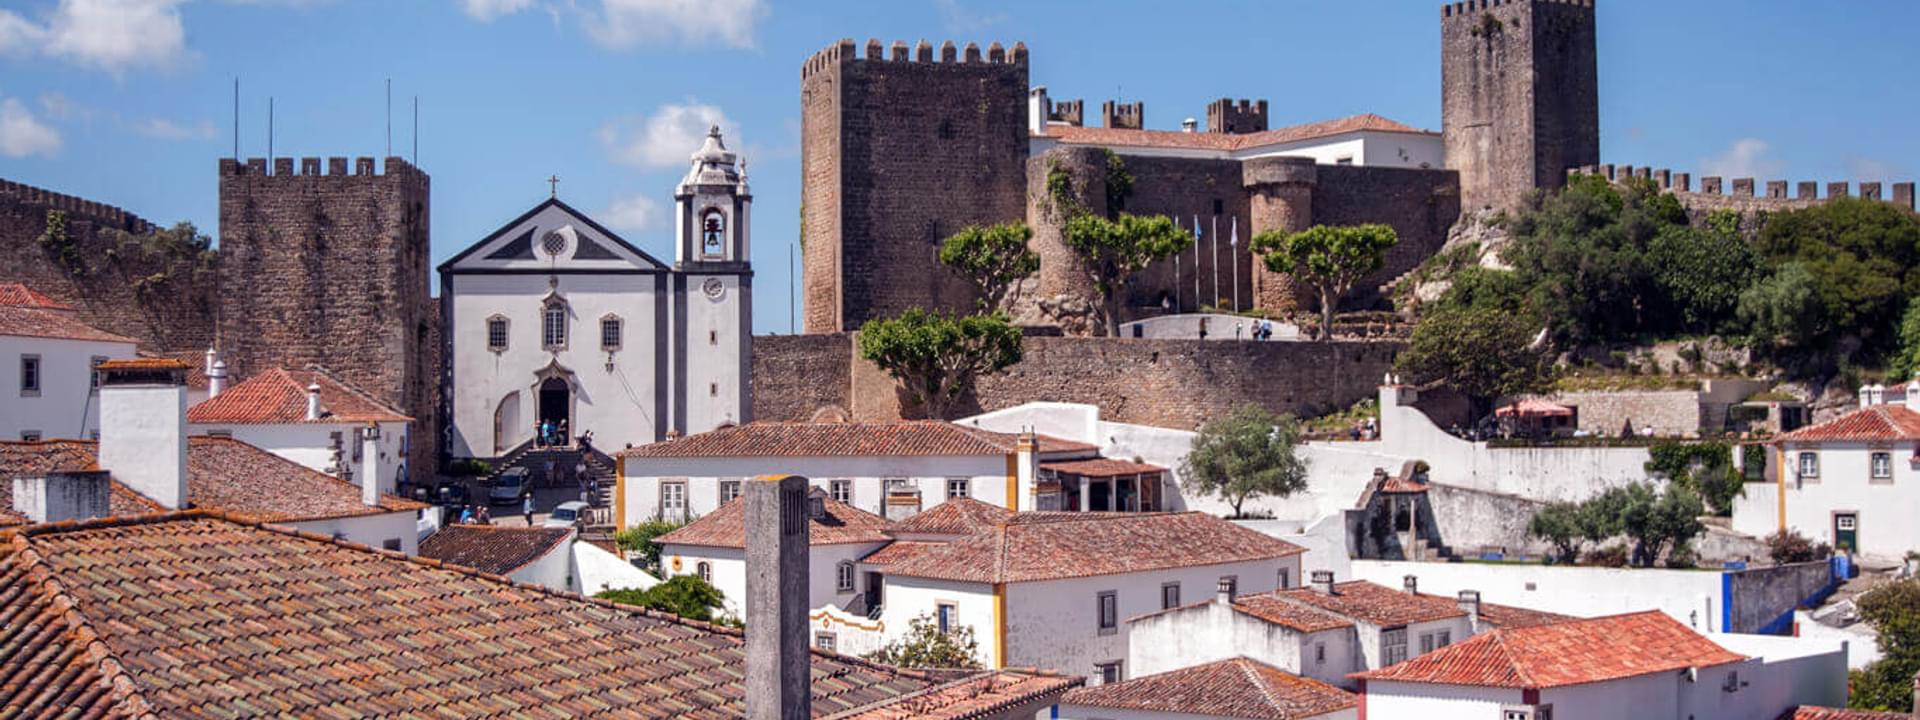 Tudo novo no Oeste de Portugal: 6 destinos incríveis para visitar no Centro de Portugal